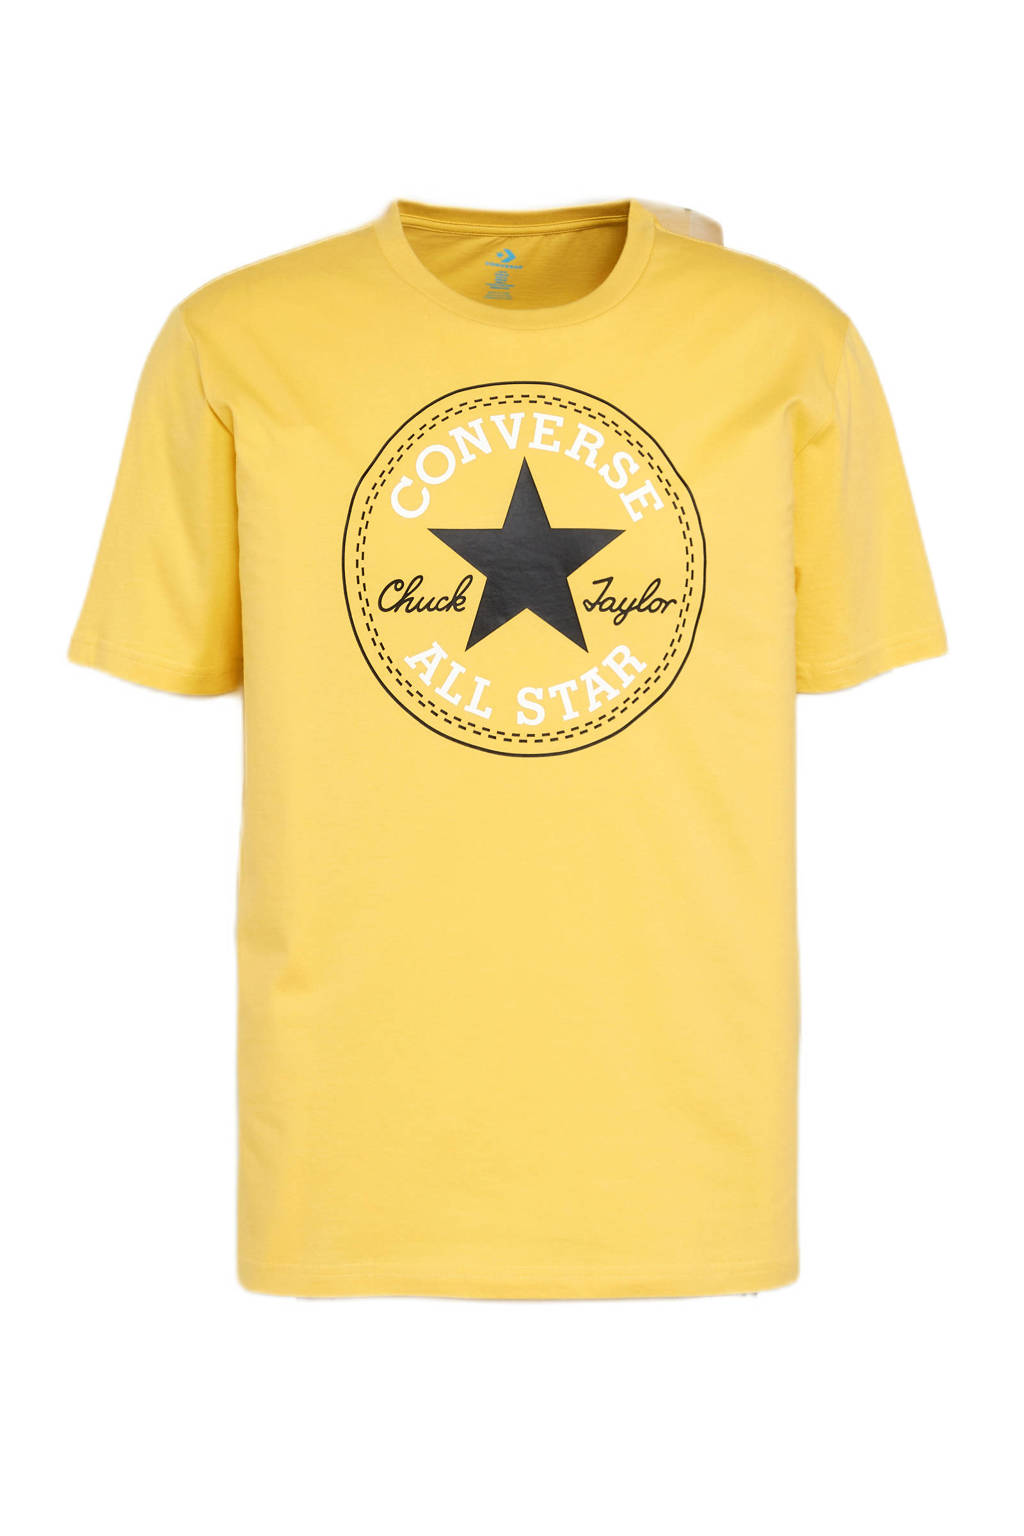 Converse T-shirt Nova Chuck Patch met printopdruk geel, Geel